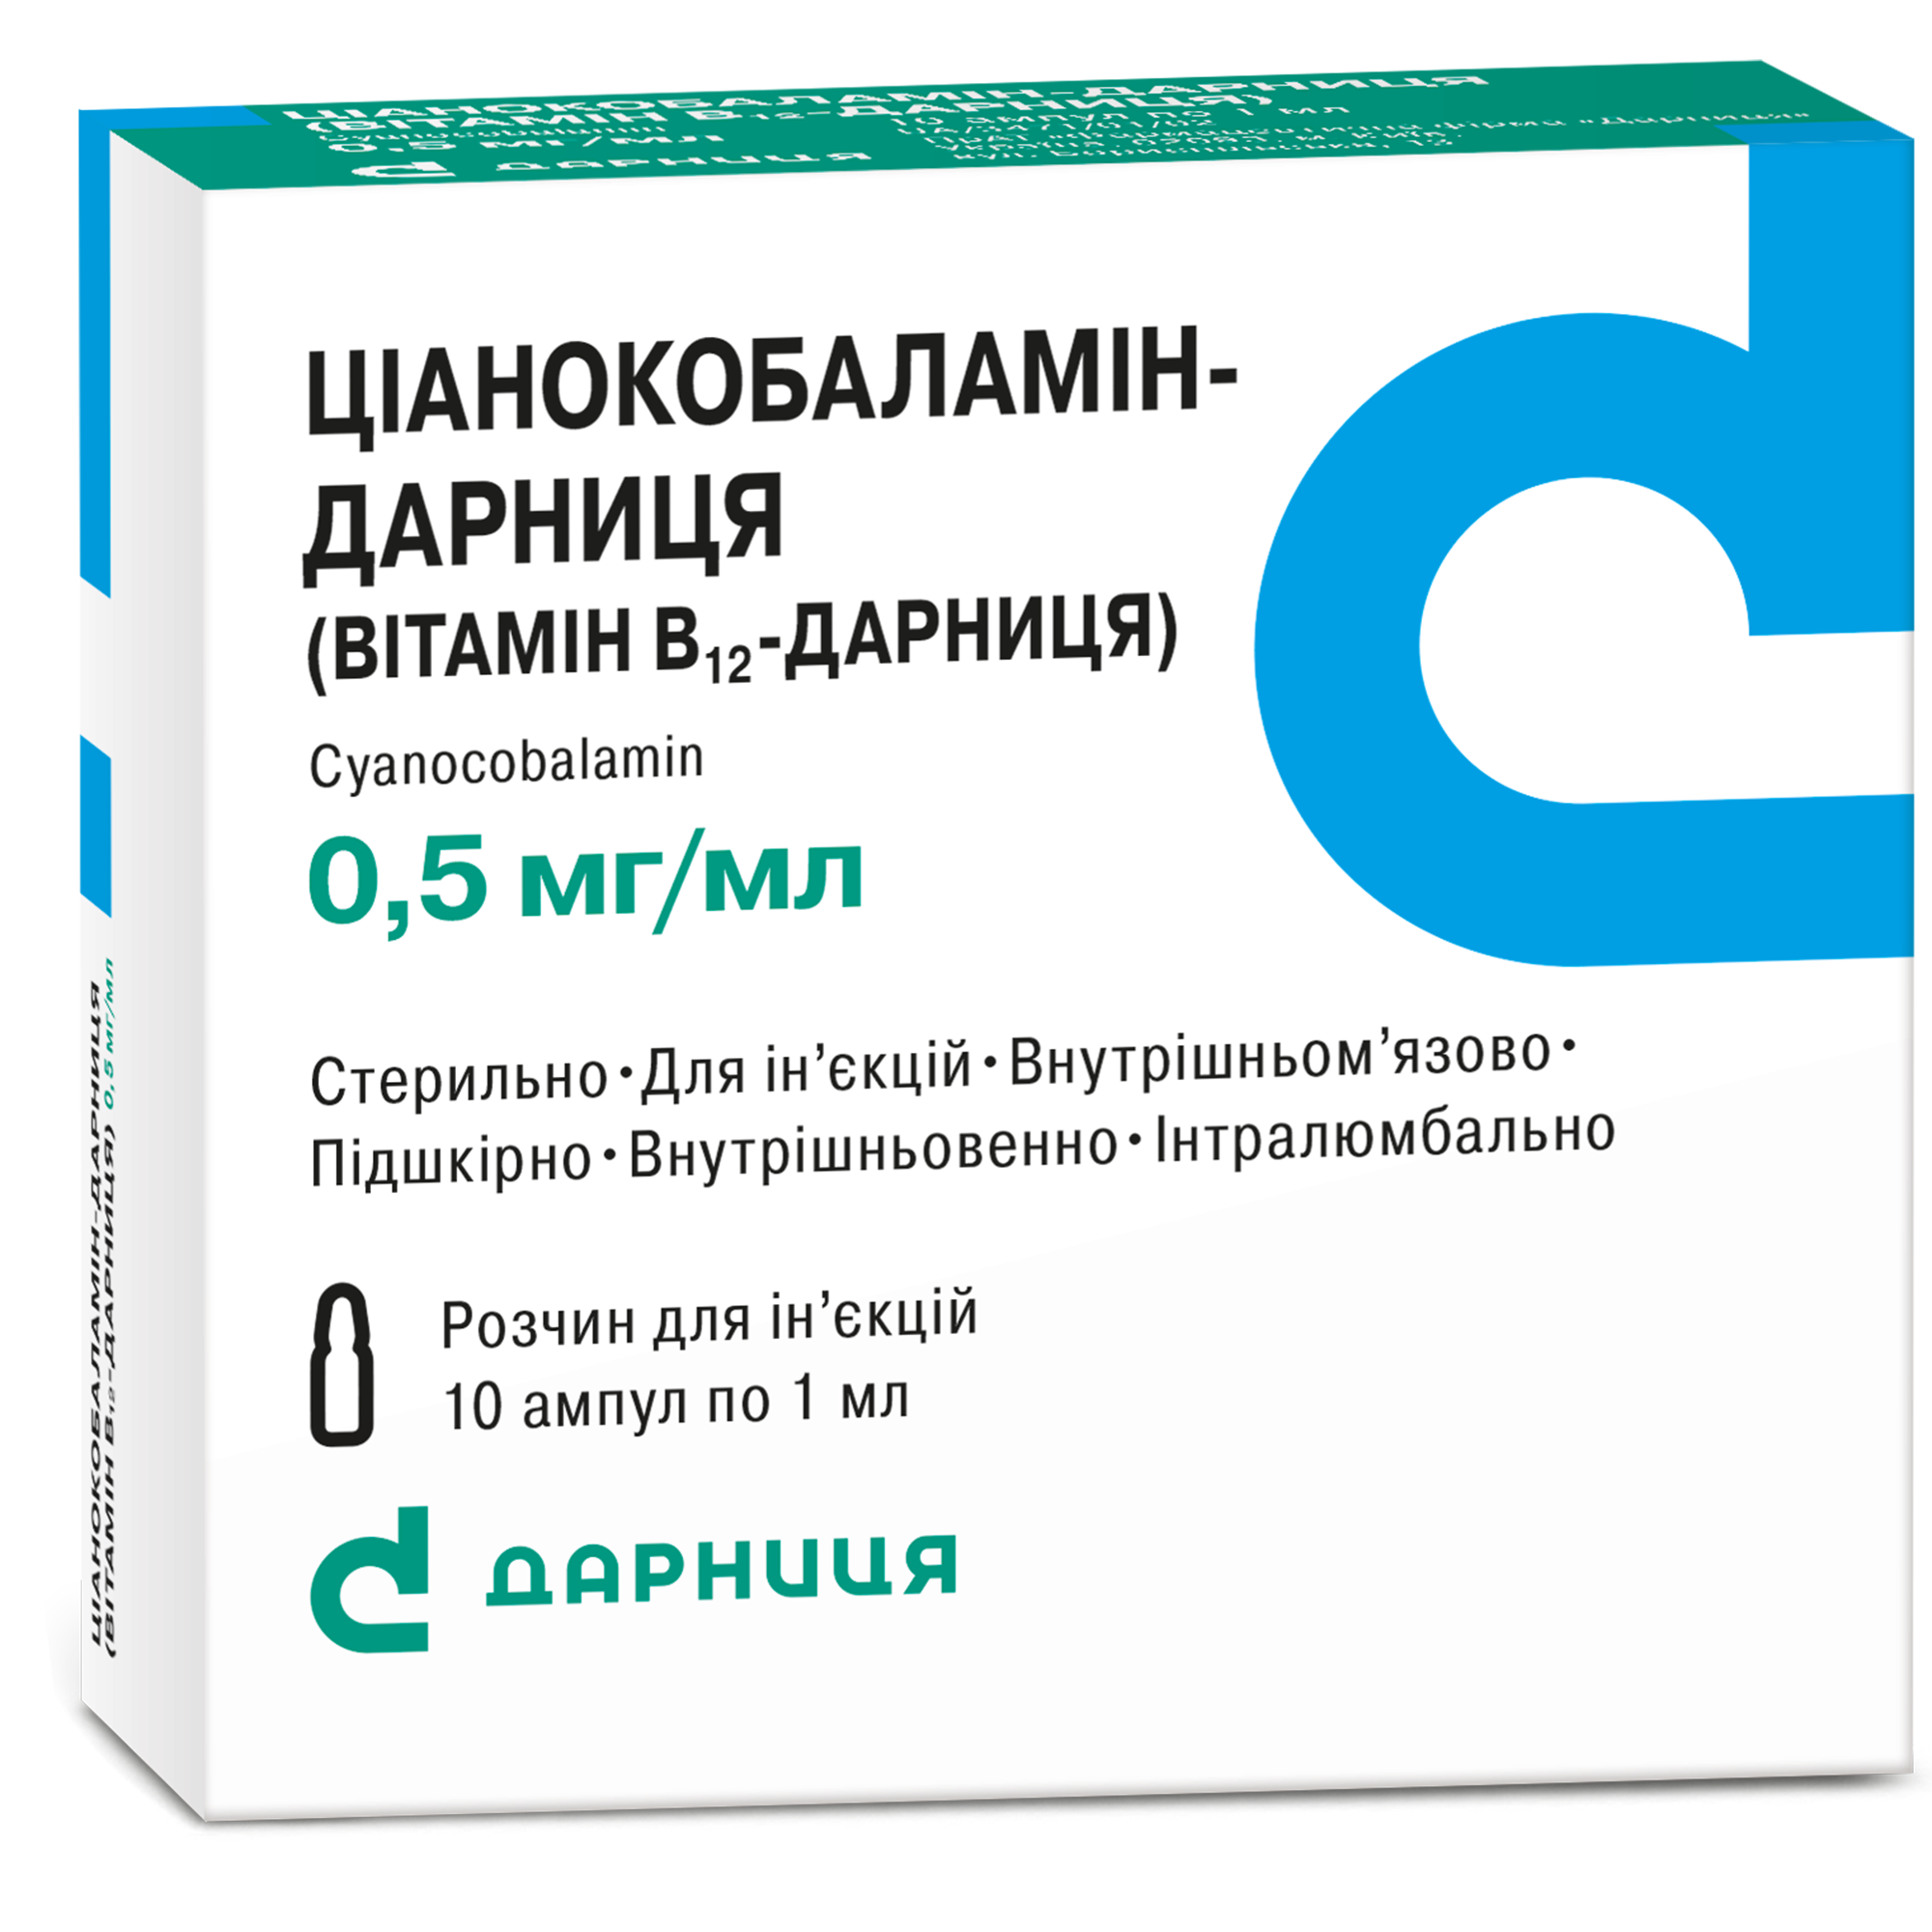 Цианокобаламин-Дарница (витамин В12-Дарница)